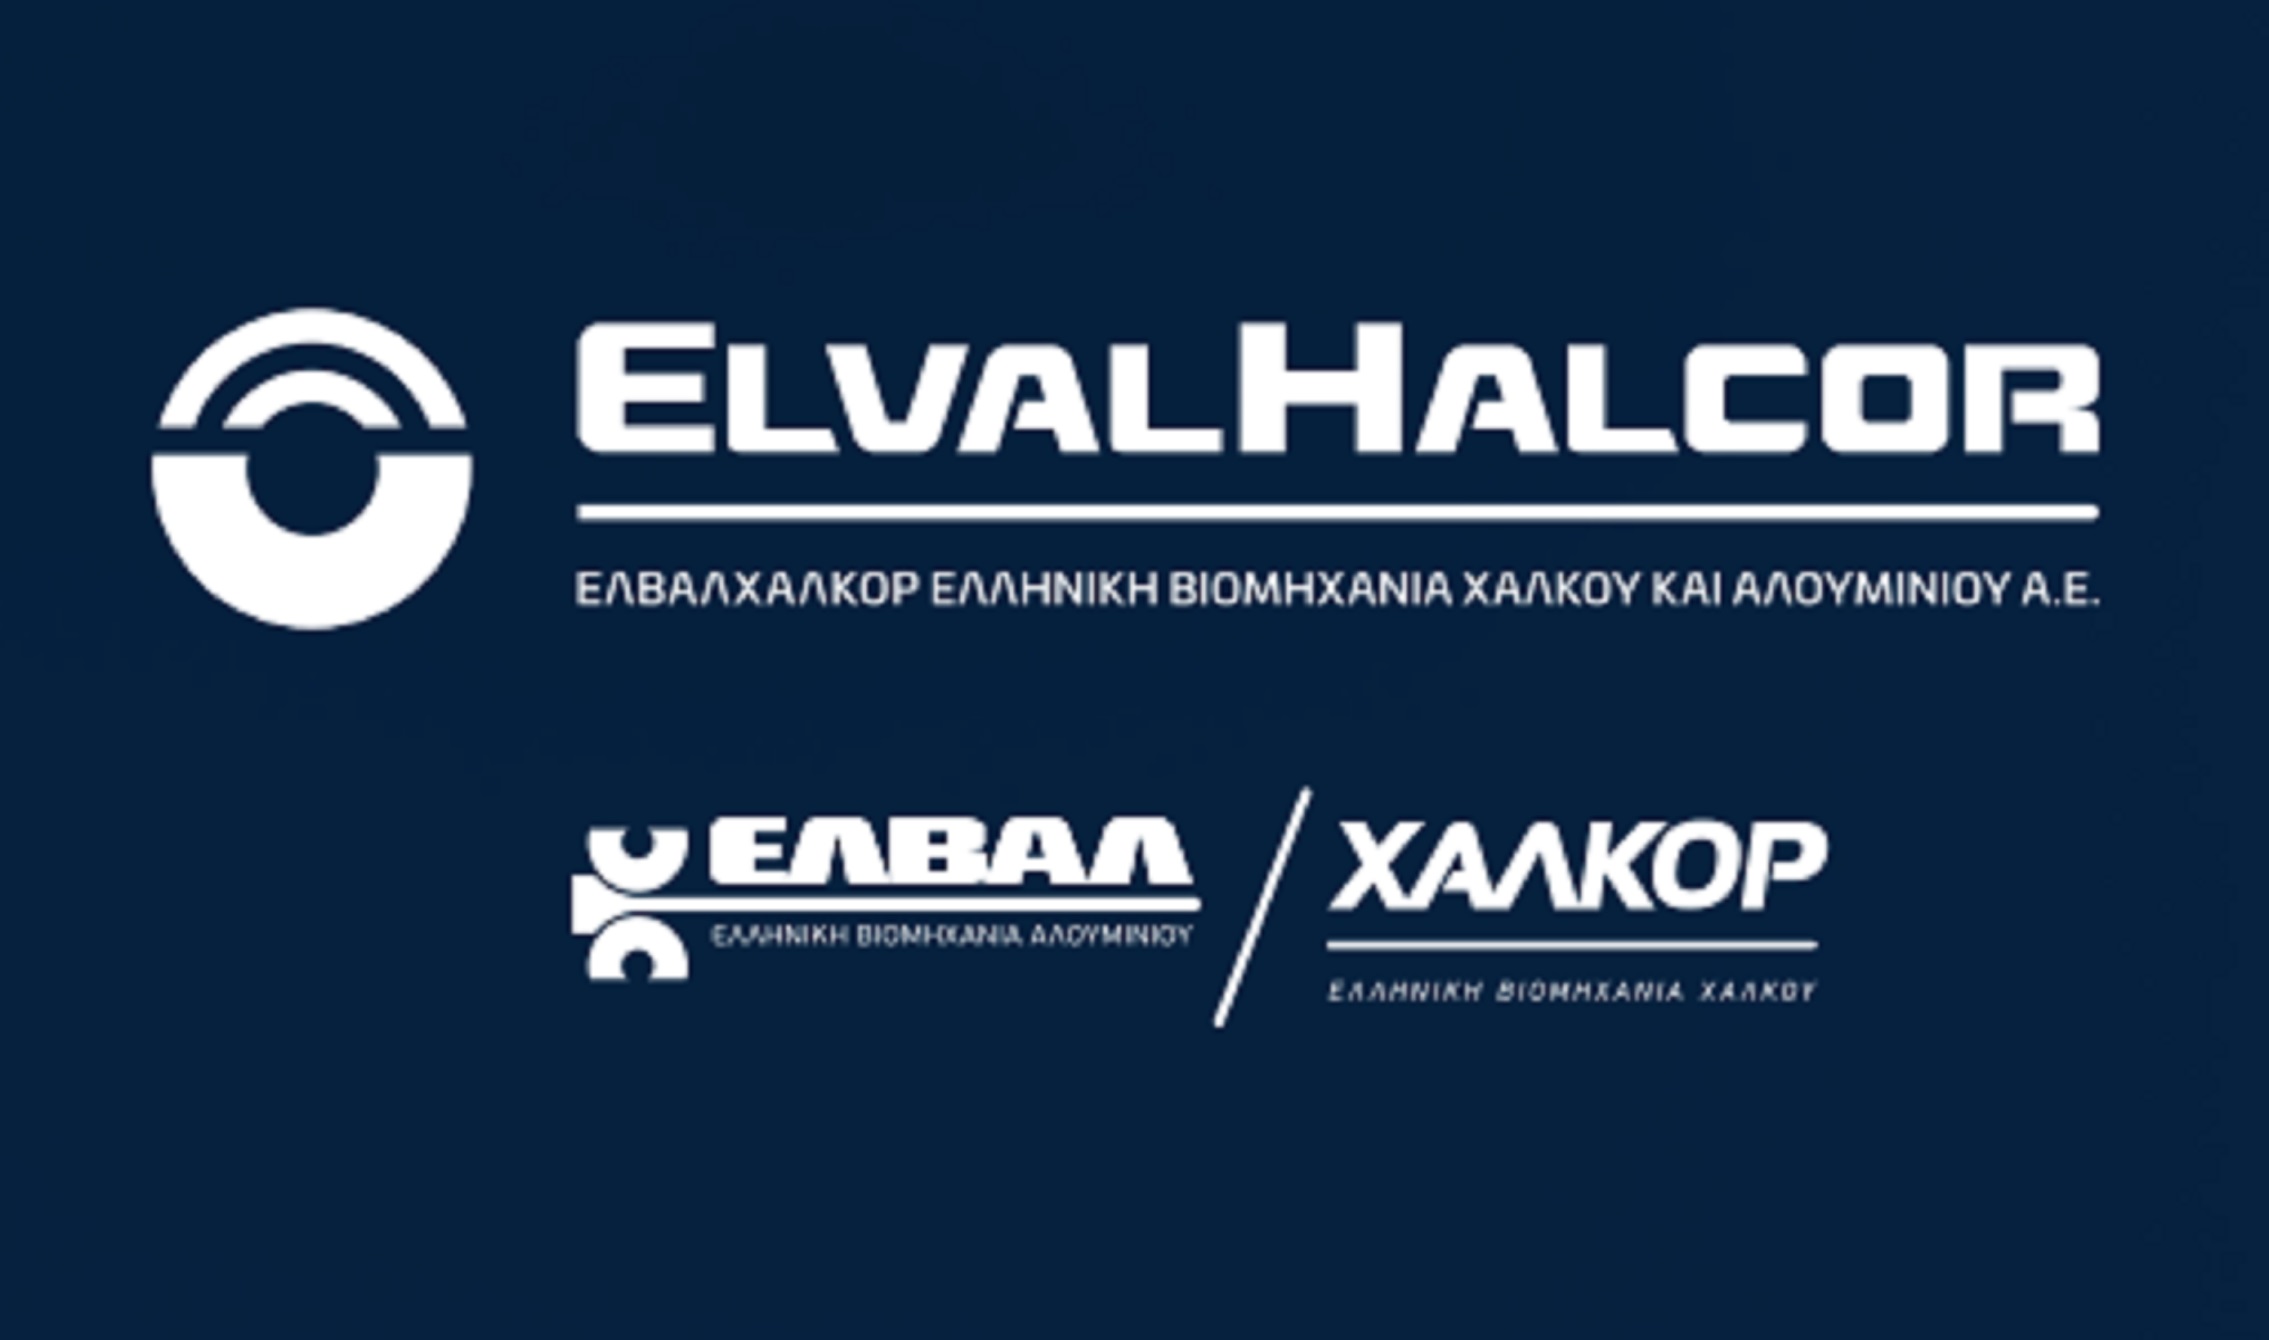 Ελβαλχαλκόρ: Απόφαση για έκδοση ομολογιακού δανείου έως 250 εκατ. ευρώ